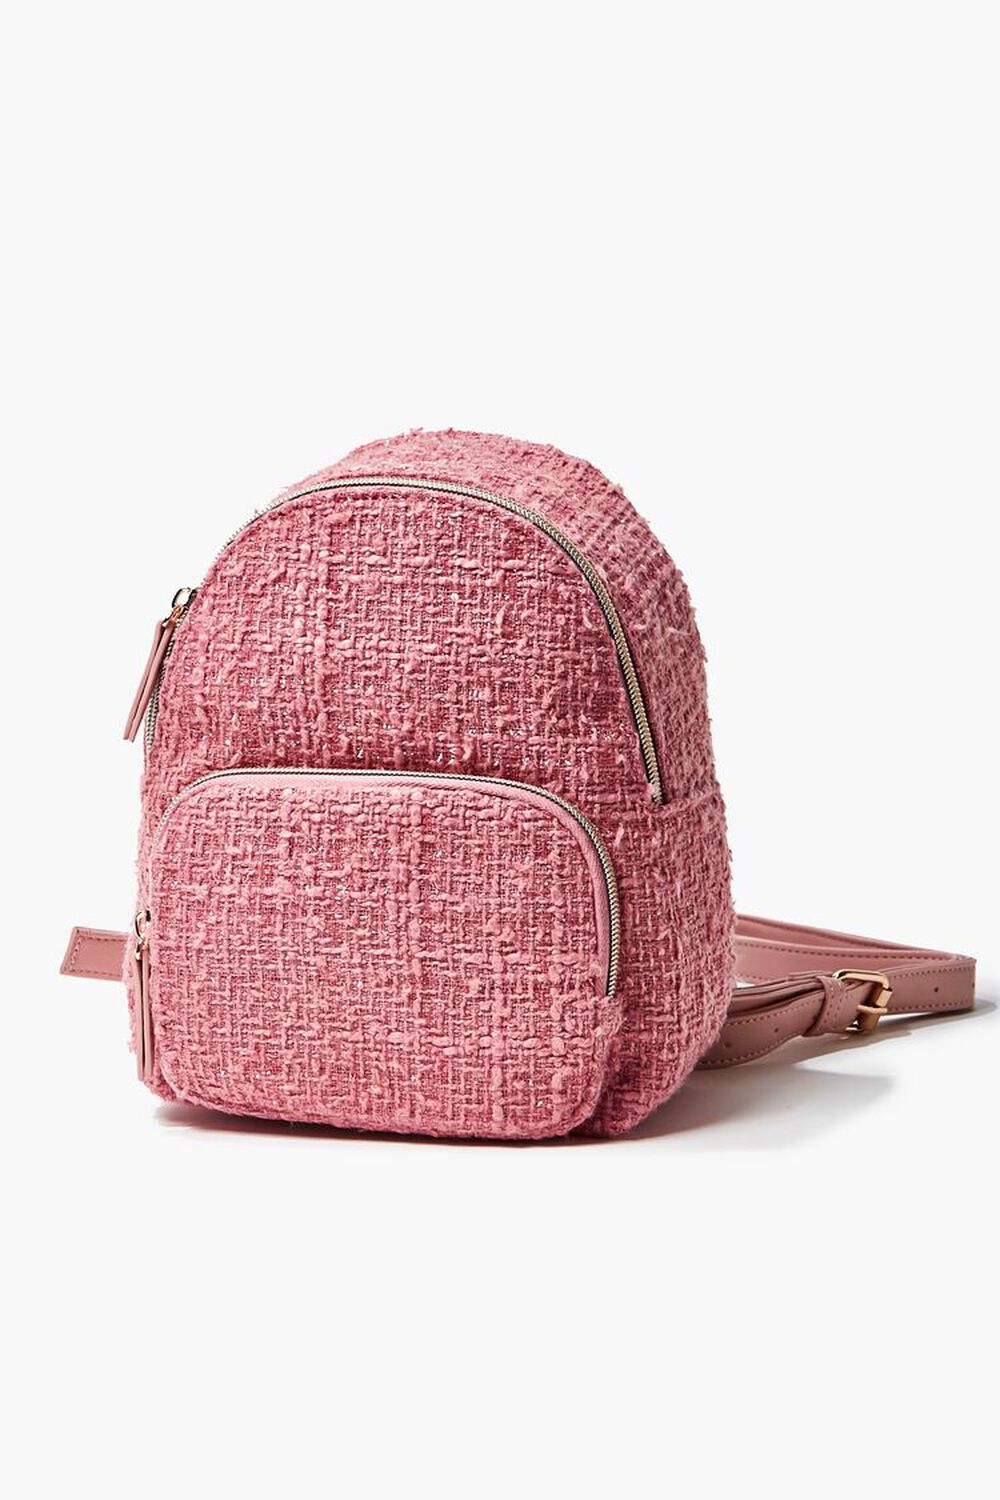 Tweed Zip-Top Backpack, image 1